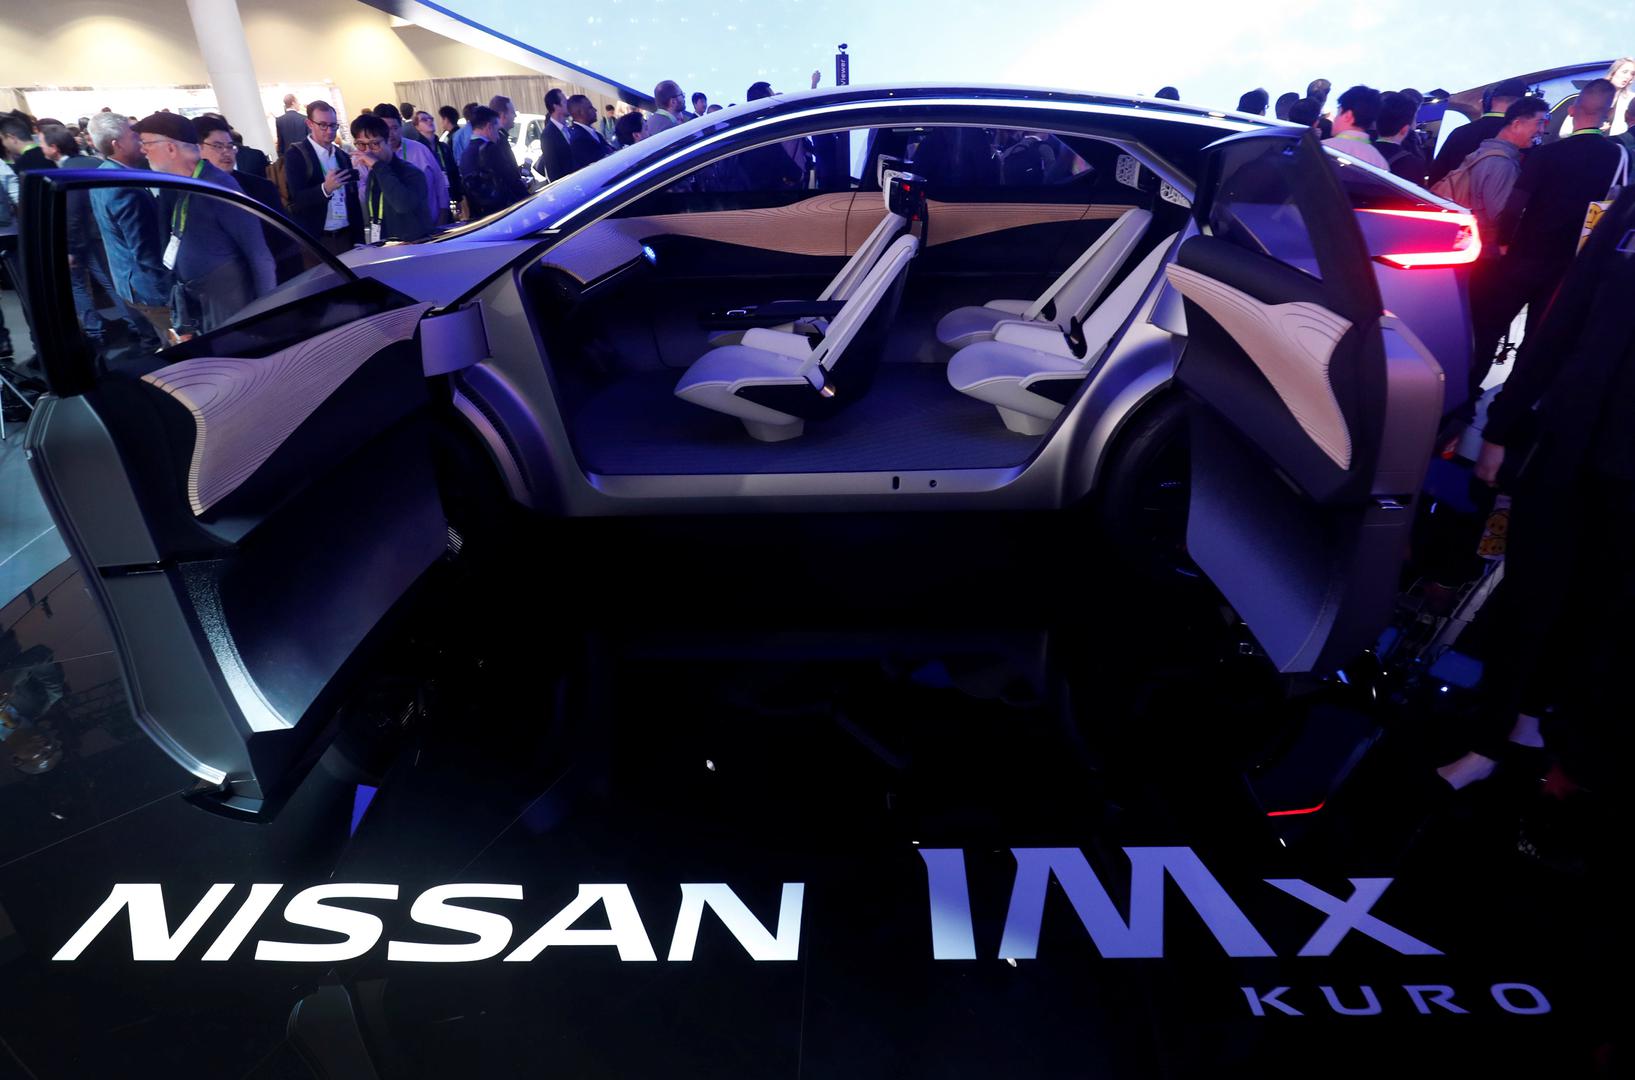 Nissan IMx Kuro također je koncept autonomnog vozila, još jedan pokazatelj kako će promet izgledati